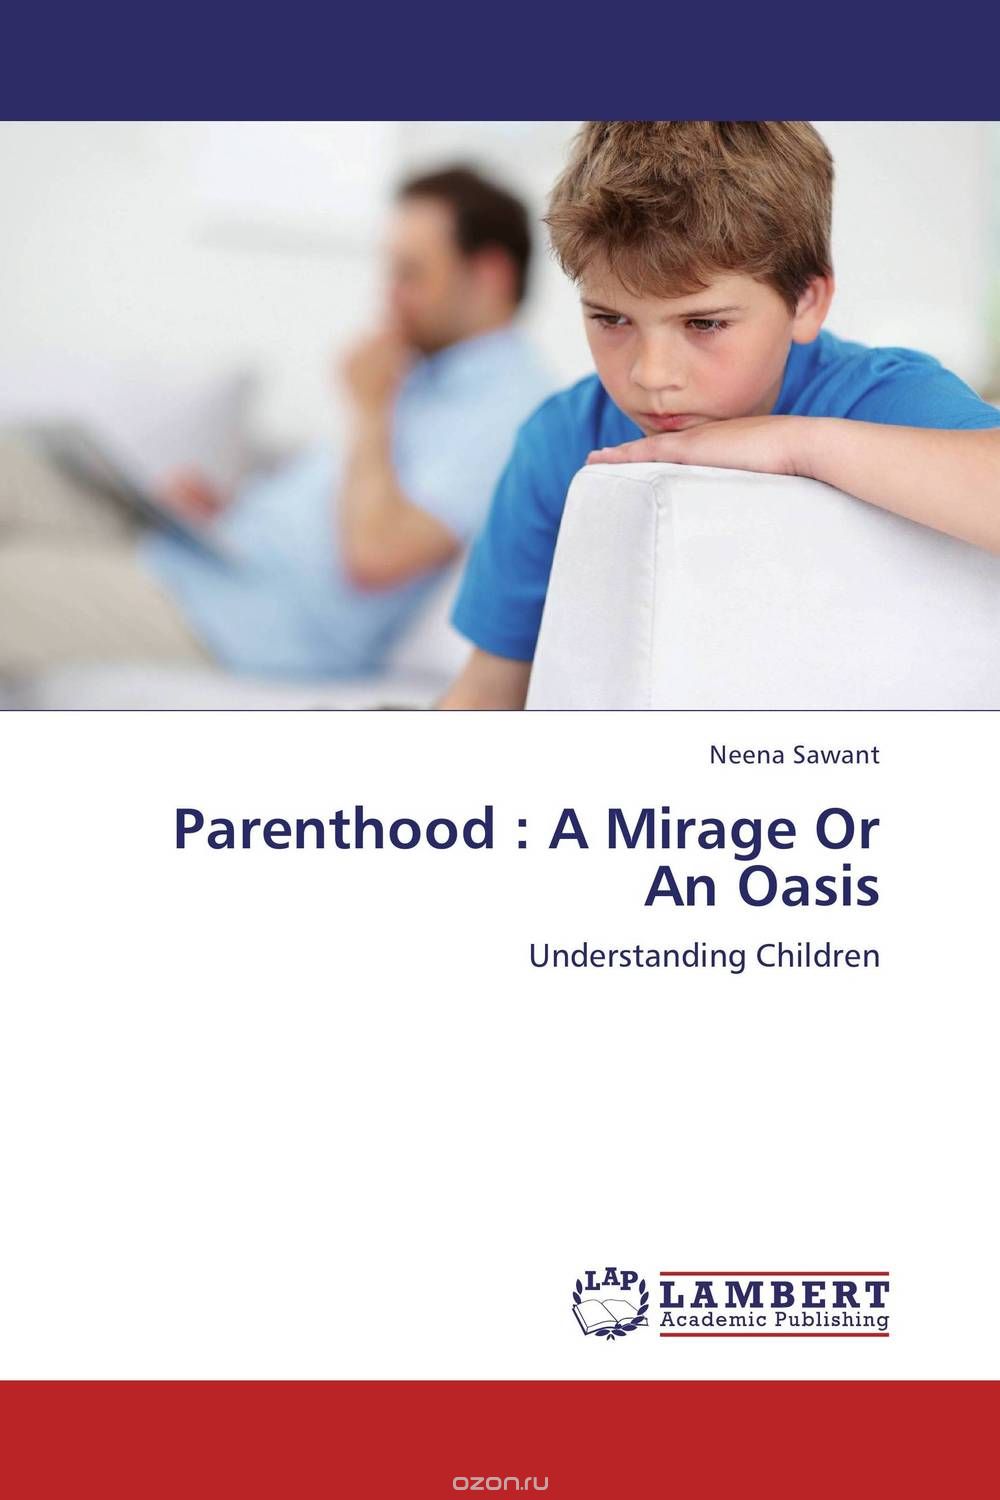 Скачать книгу "Parenthood : A Mirage Or An Oasis"